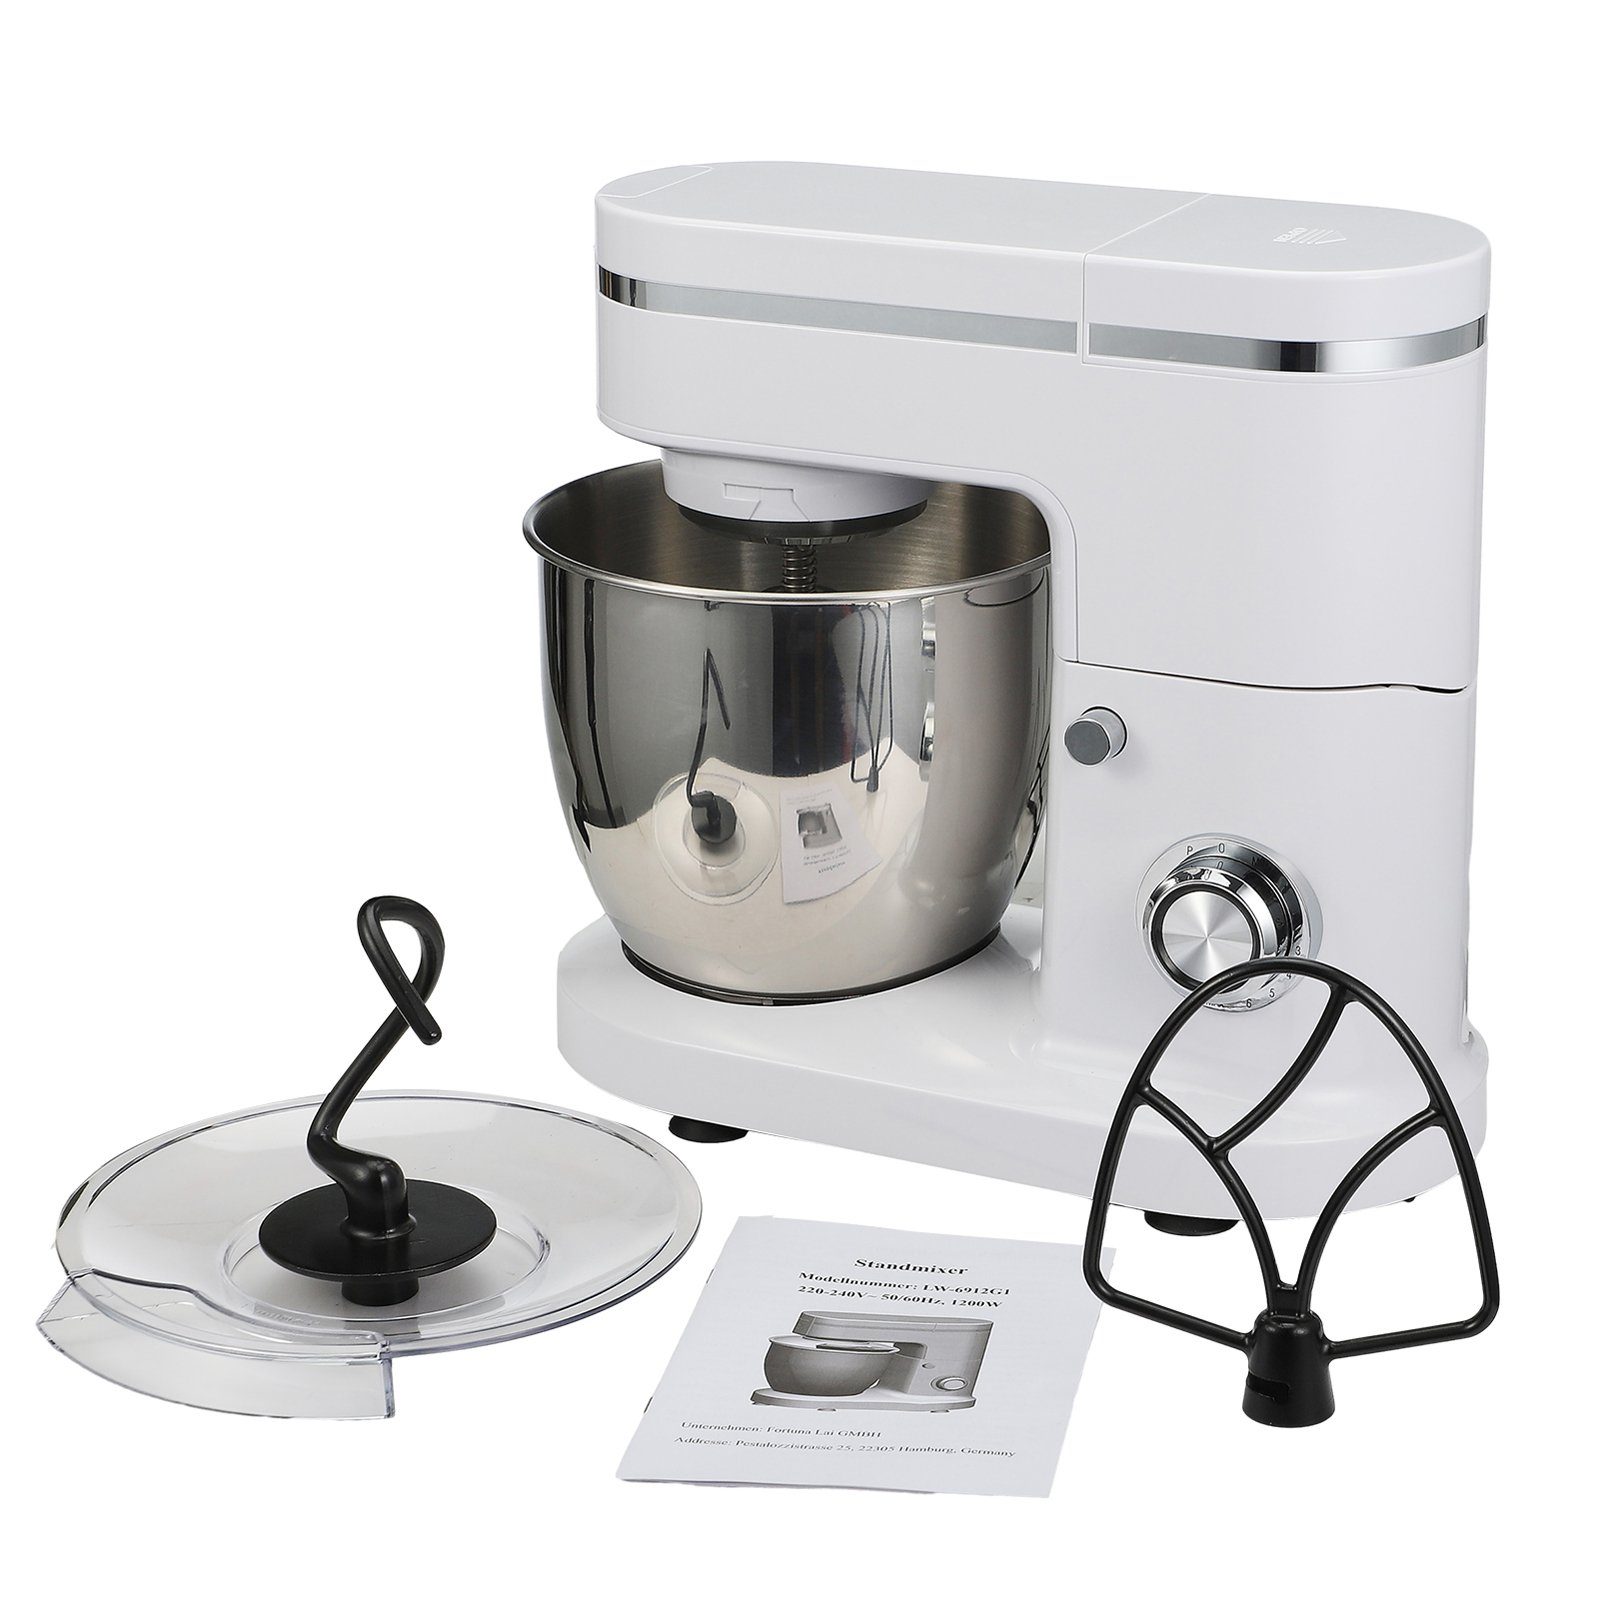 SEEZSSA Küchenmaschine mit Kochfunktion Kocher Saftbecher LW6912G1 + Grundausstattung Mahlwerkaufsatz Kunststoff Leistung + 1200W